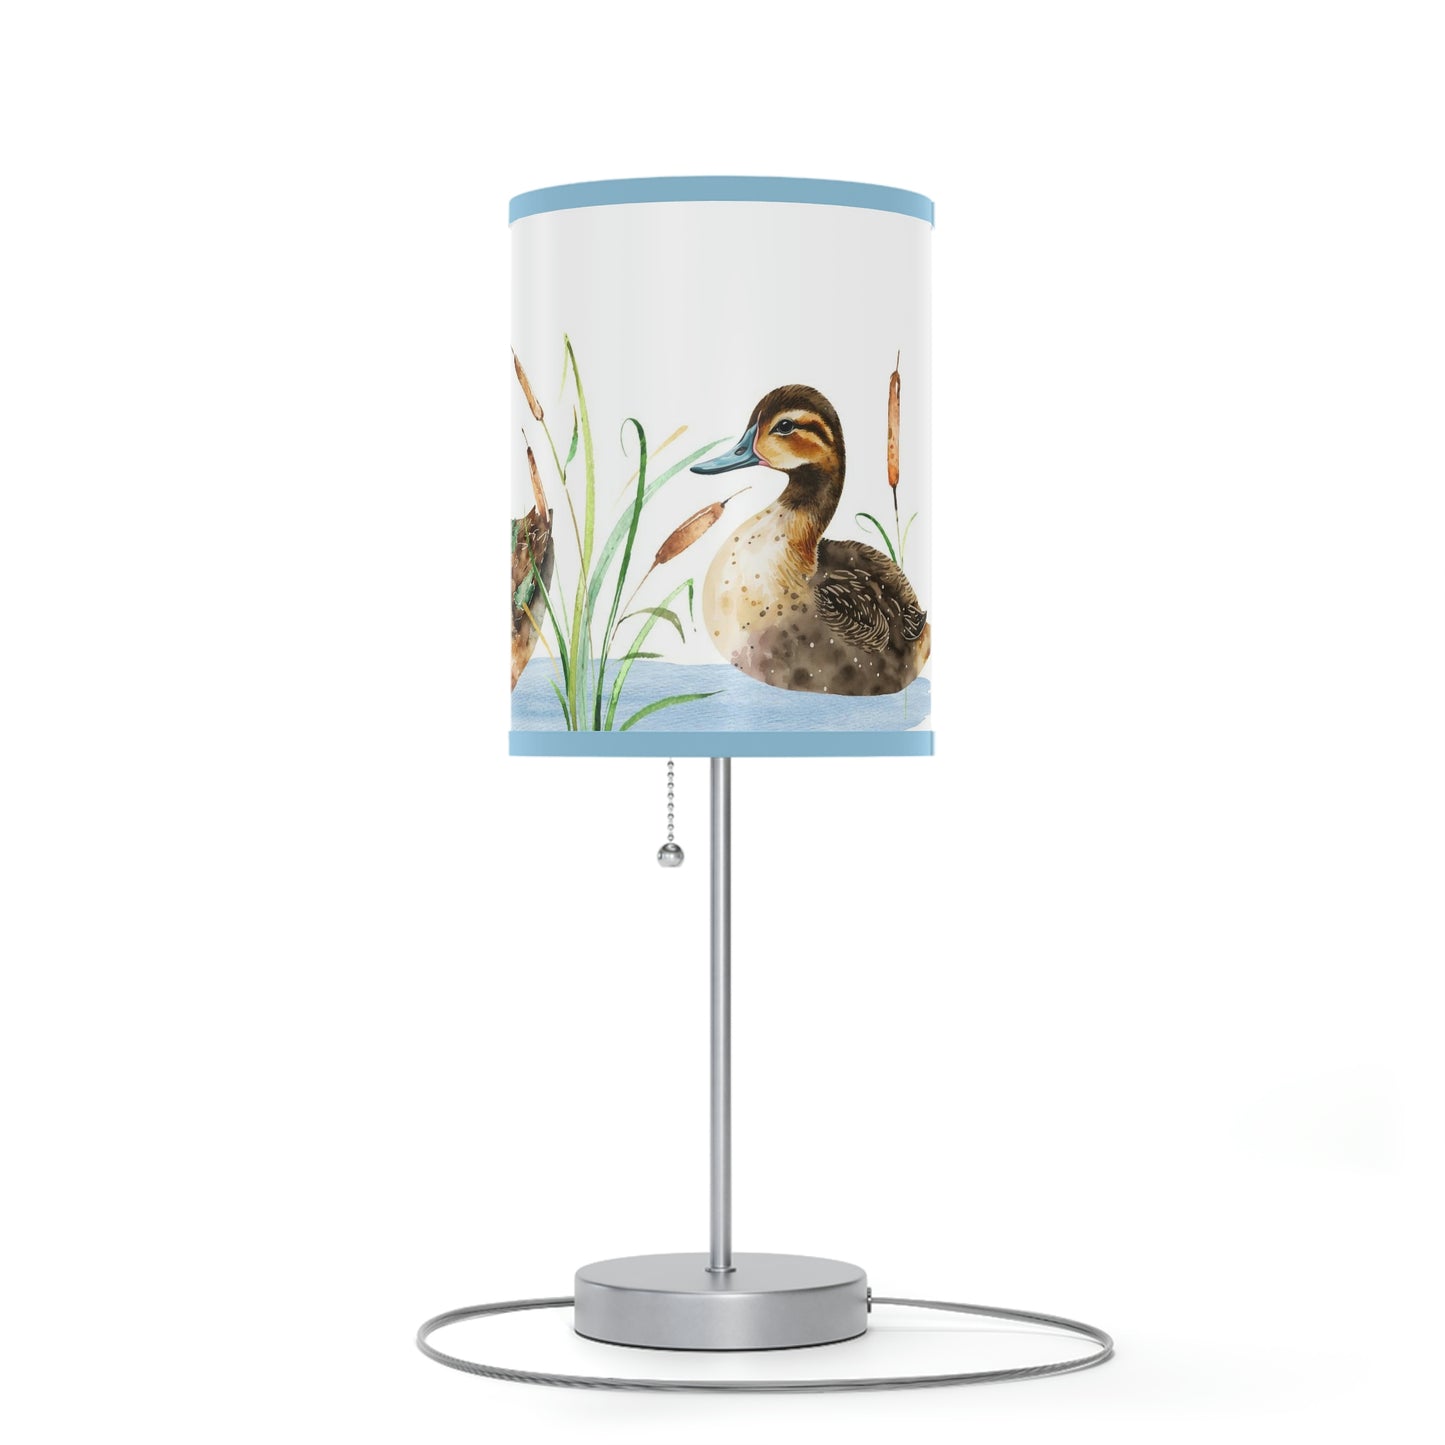 Duck nursery lamp, Mallard ducks lamp - Little Ducklings